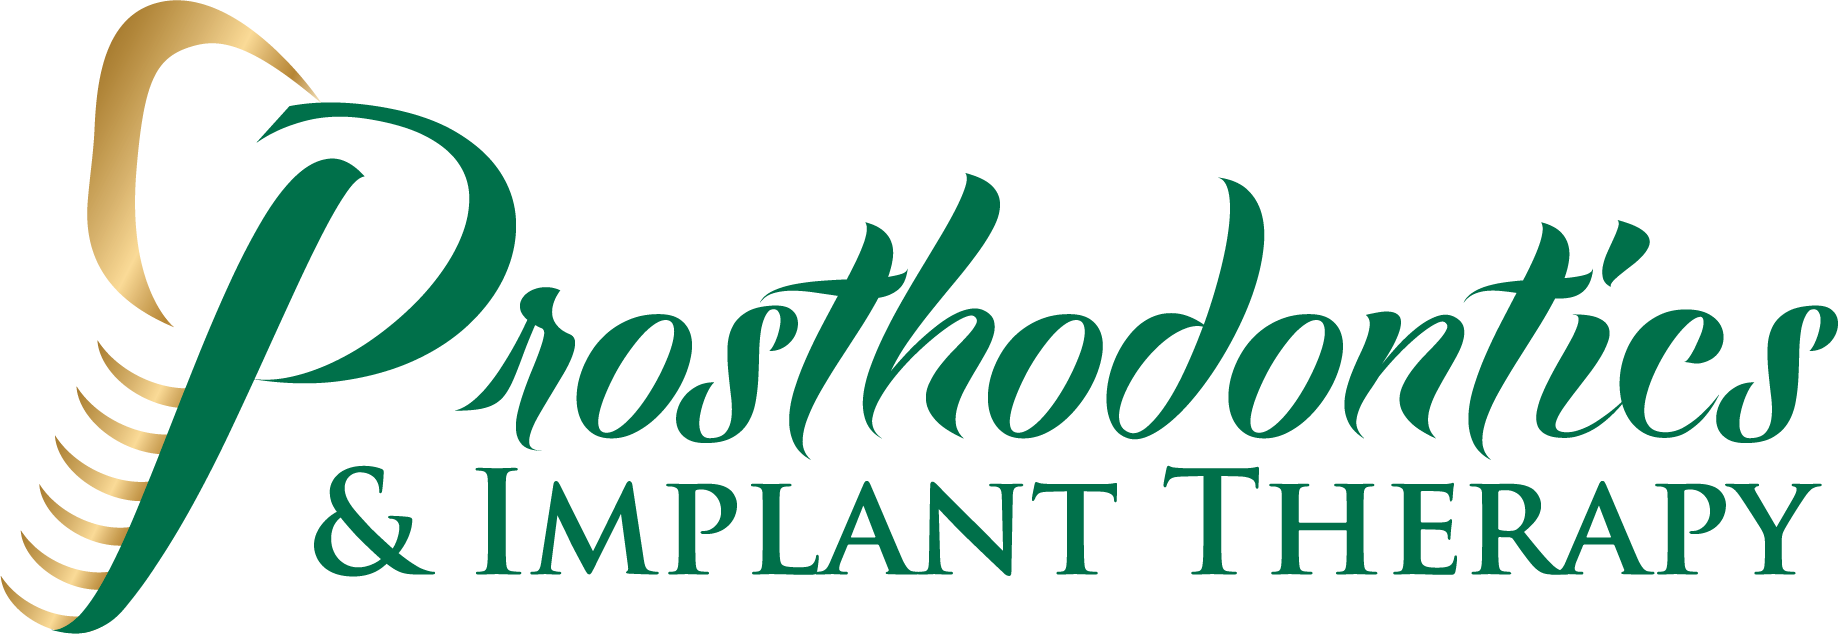 Prosthodontics logo